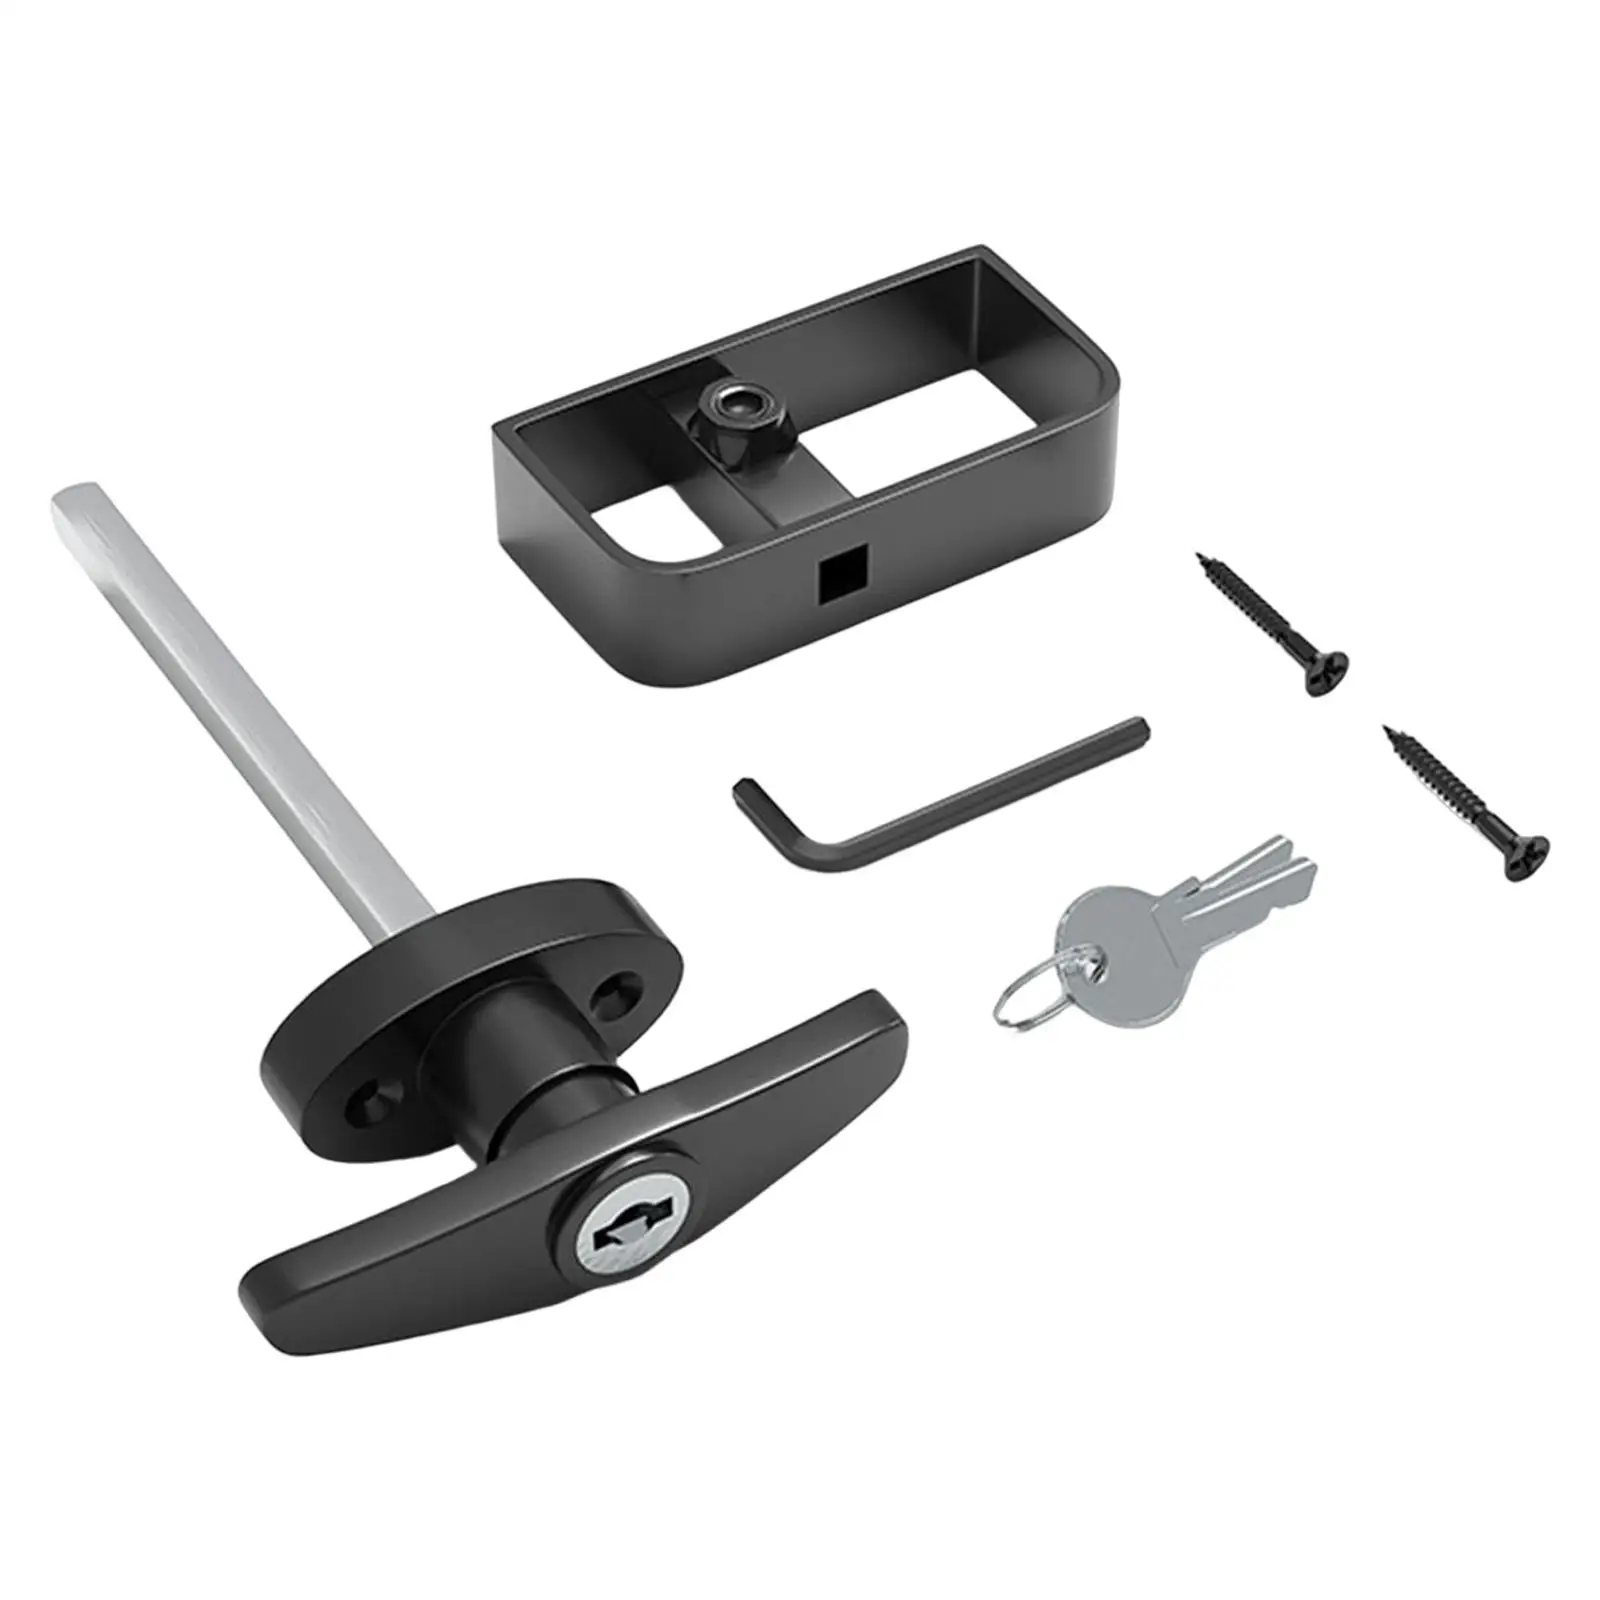 T Handle Lock with Two Keys Electric Cabinet Lock Replacement Hardware for Caravan Garage Barn Door Truck Accessories